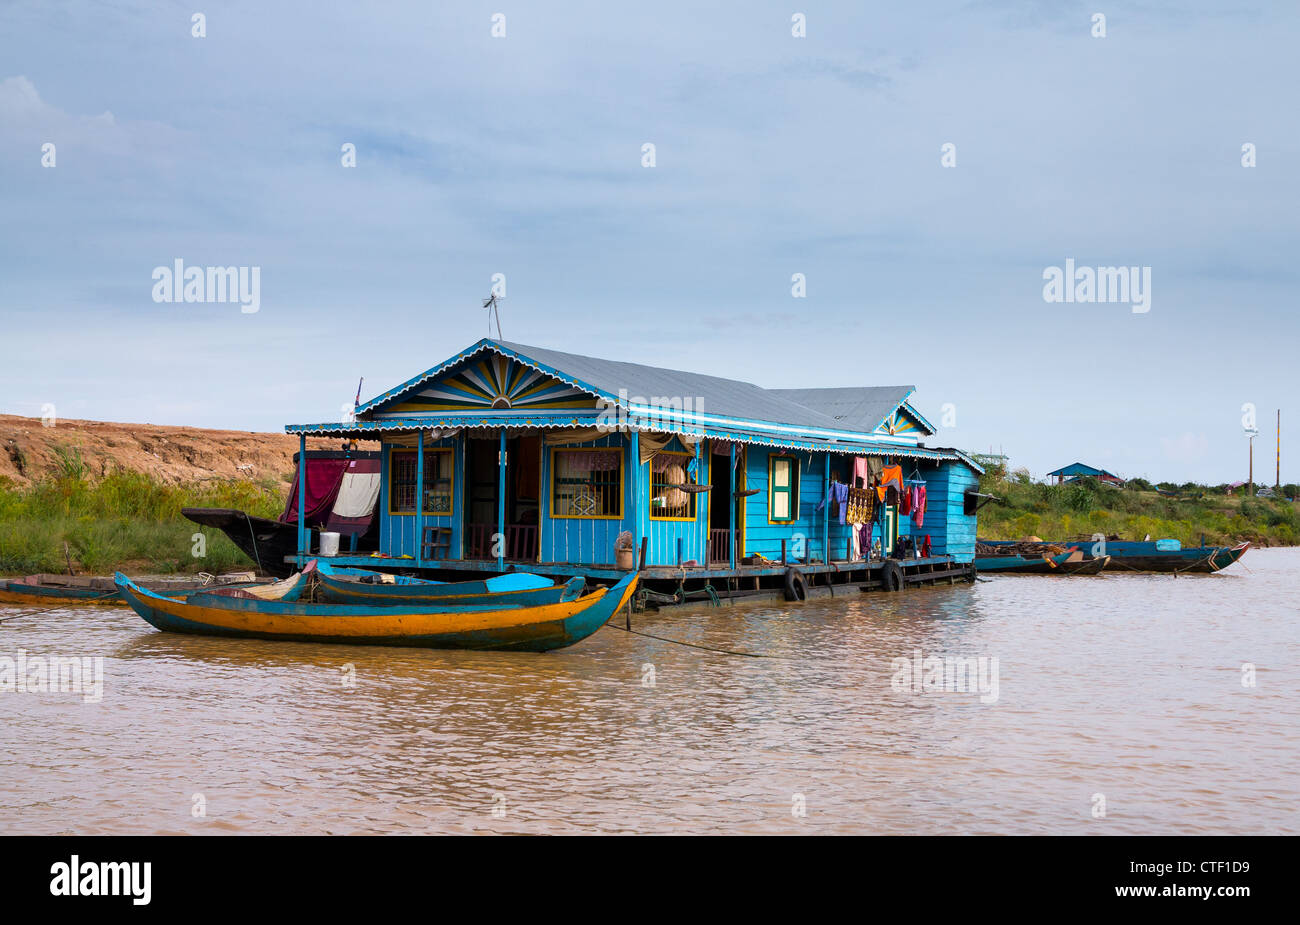 Villaggio galleggiante sul lago Tonle Sap, Siem Reap, Cambogia con alcune case fatte da imbarcazioni Foto Stock